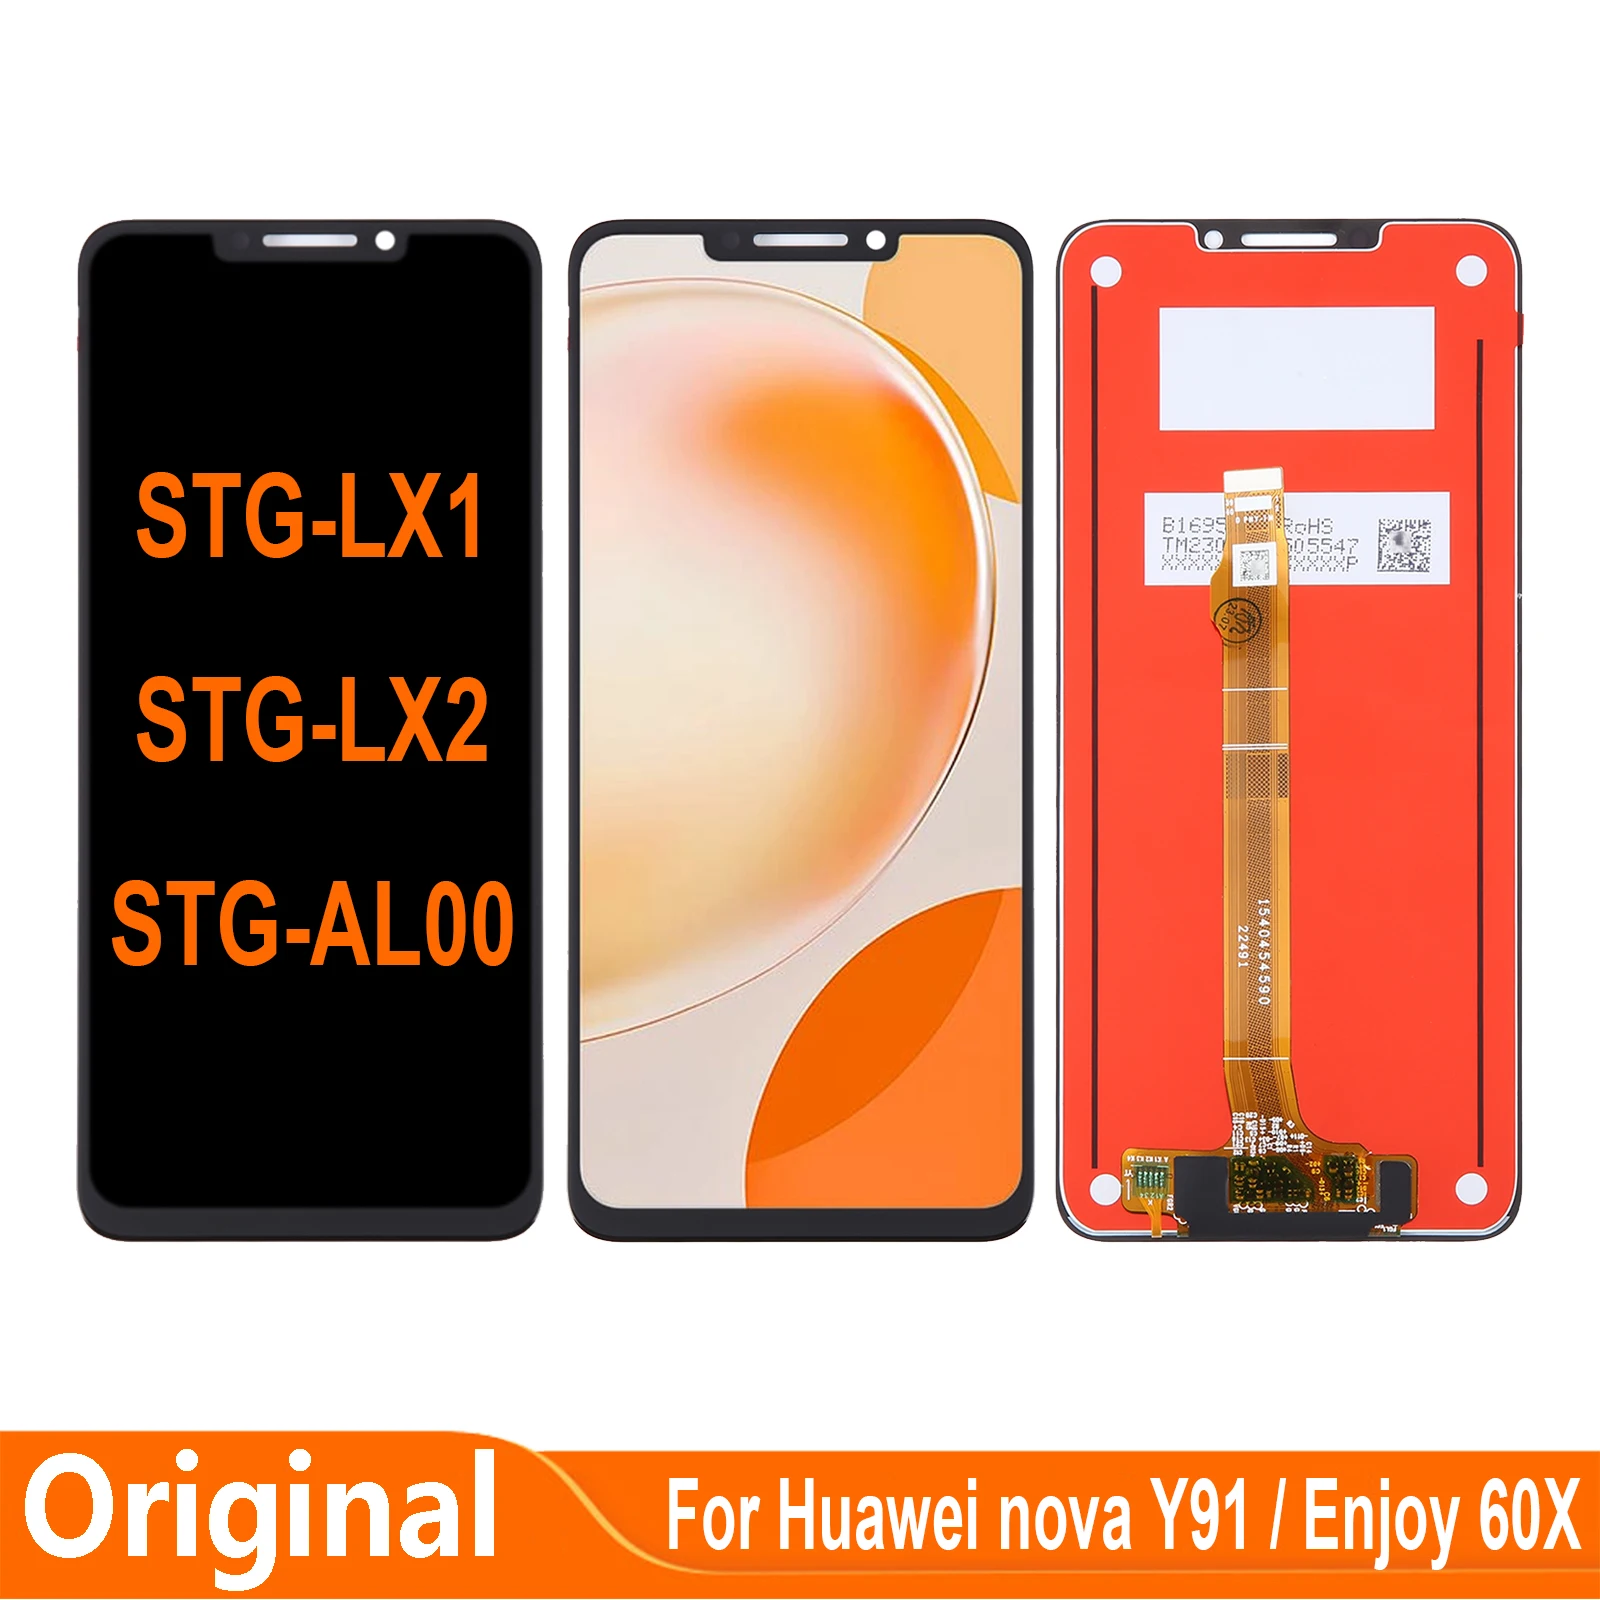 

6.95'' Original For Huawei Nova Y91 Enjoy 60X STG-AL00 STG-LX1 STG-LX2 LCD Display Touch Screen Digitizer Assembly